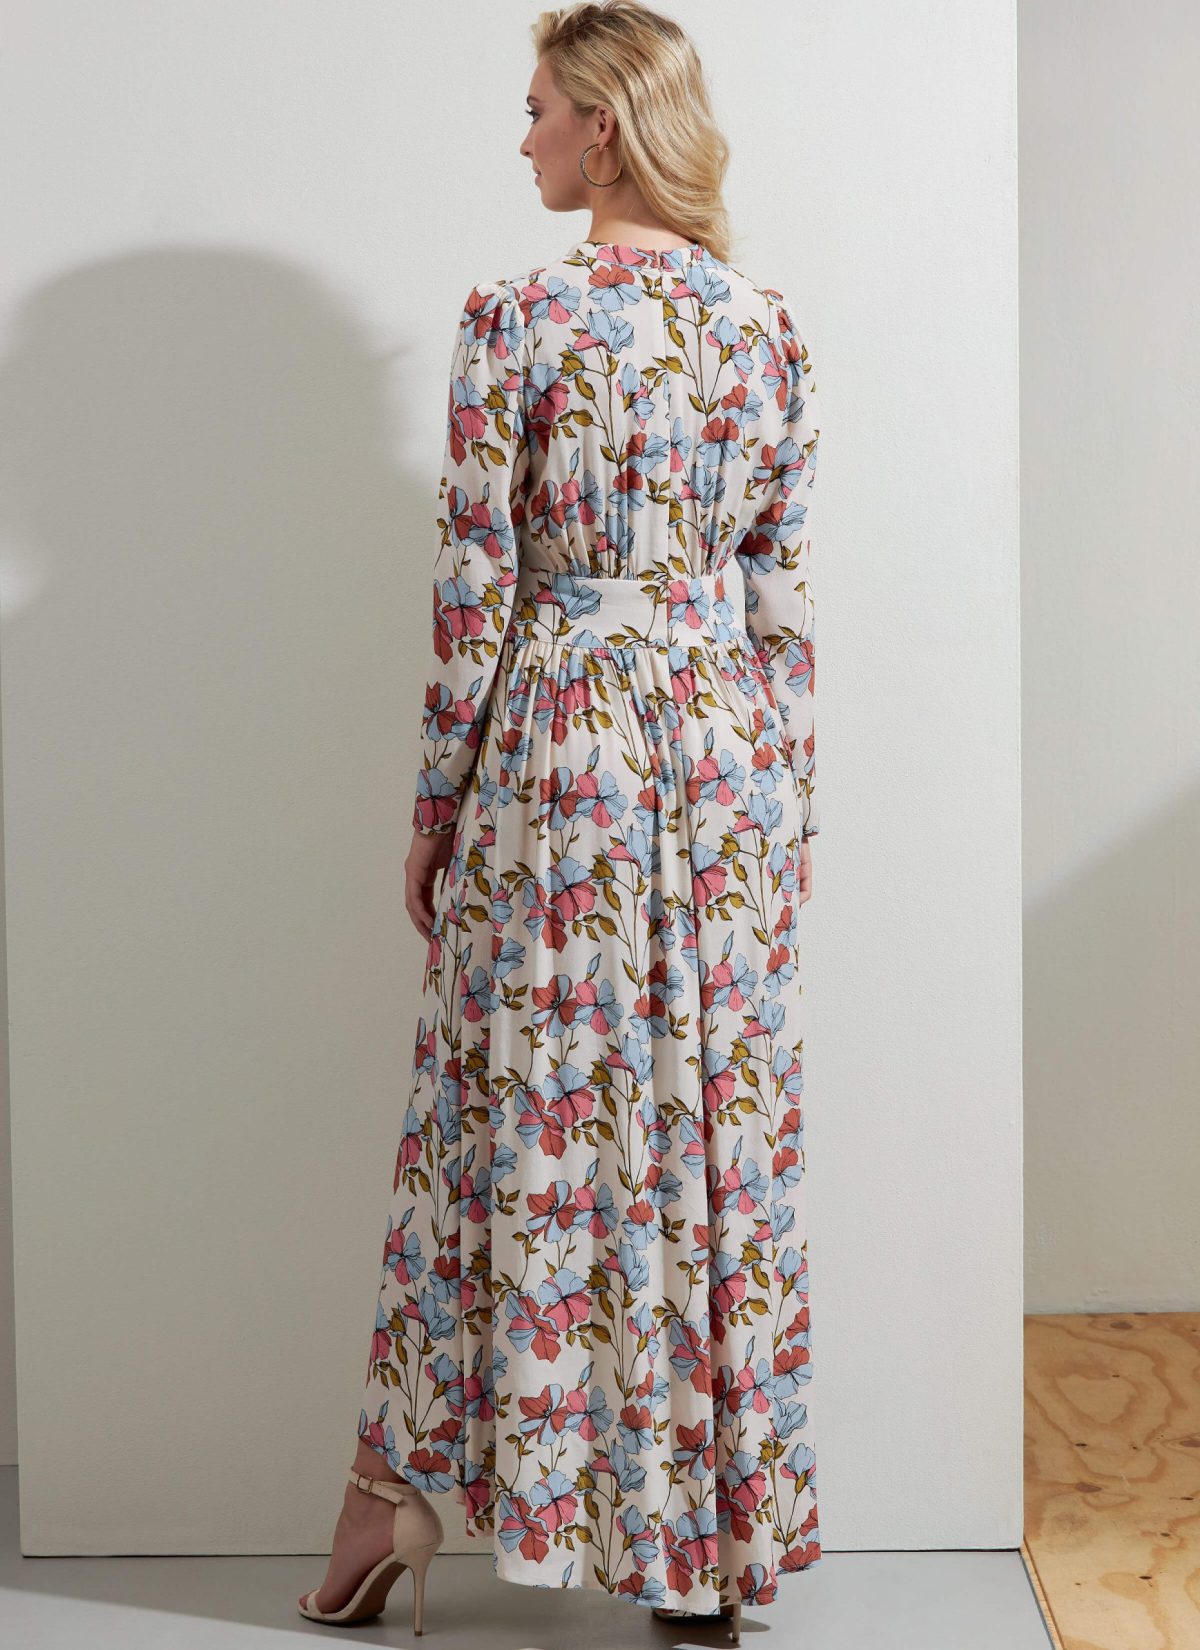 Vogue Patterns V1862 Misses' Dress